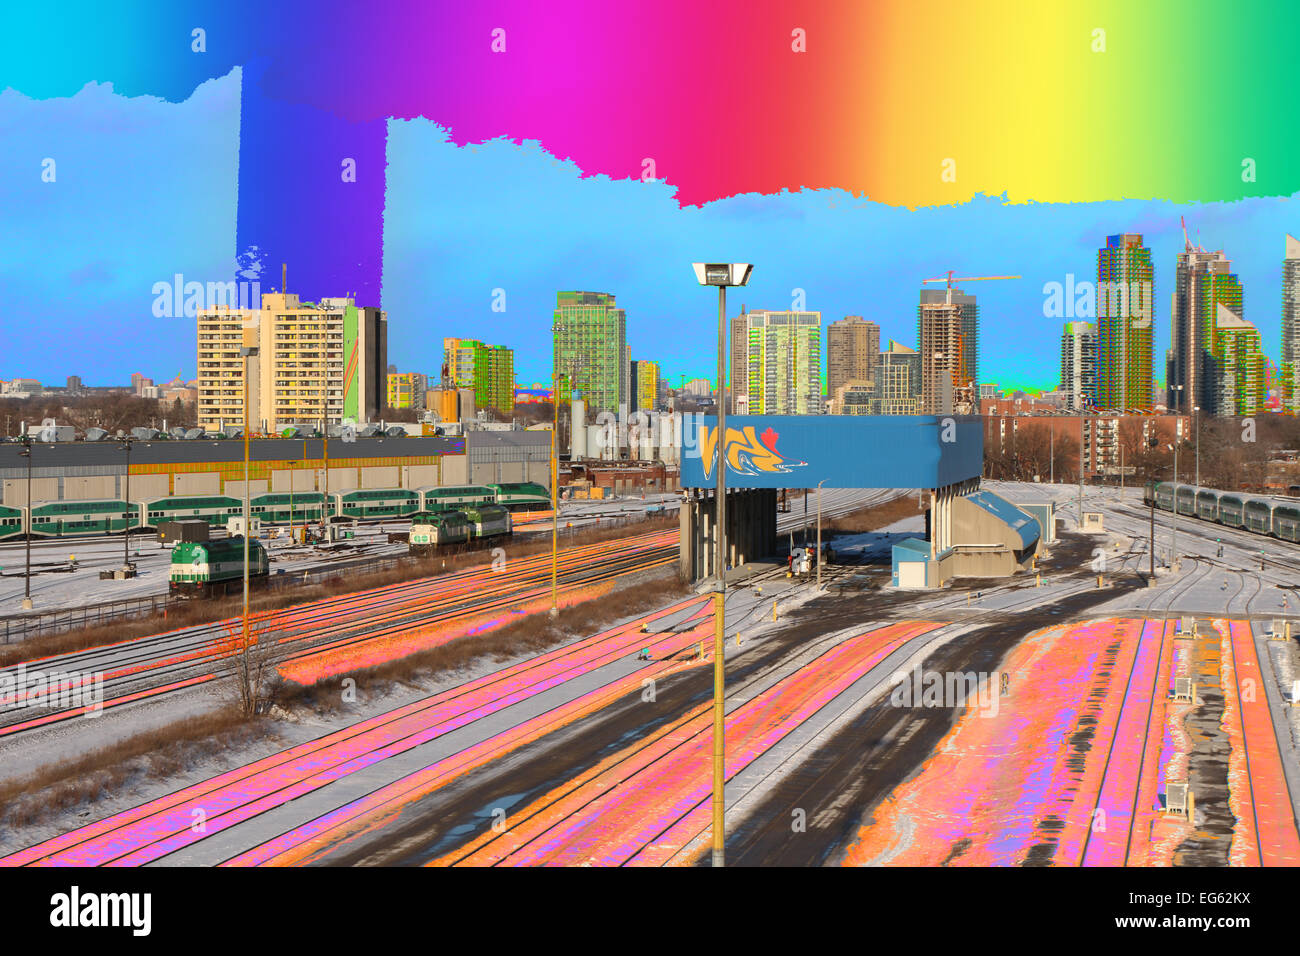 Una partita;blu;edificio edifici;;città;città;CITTÀ SCAPE;skyline della città;cityscape;cityscapes;immagine a colori;immagini a colori;immagine a colori;col Foto Stock